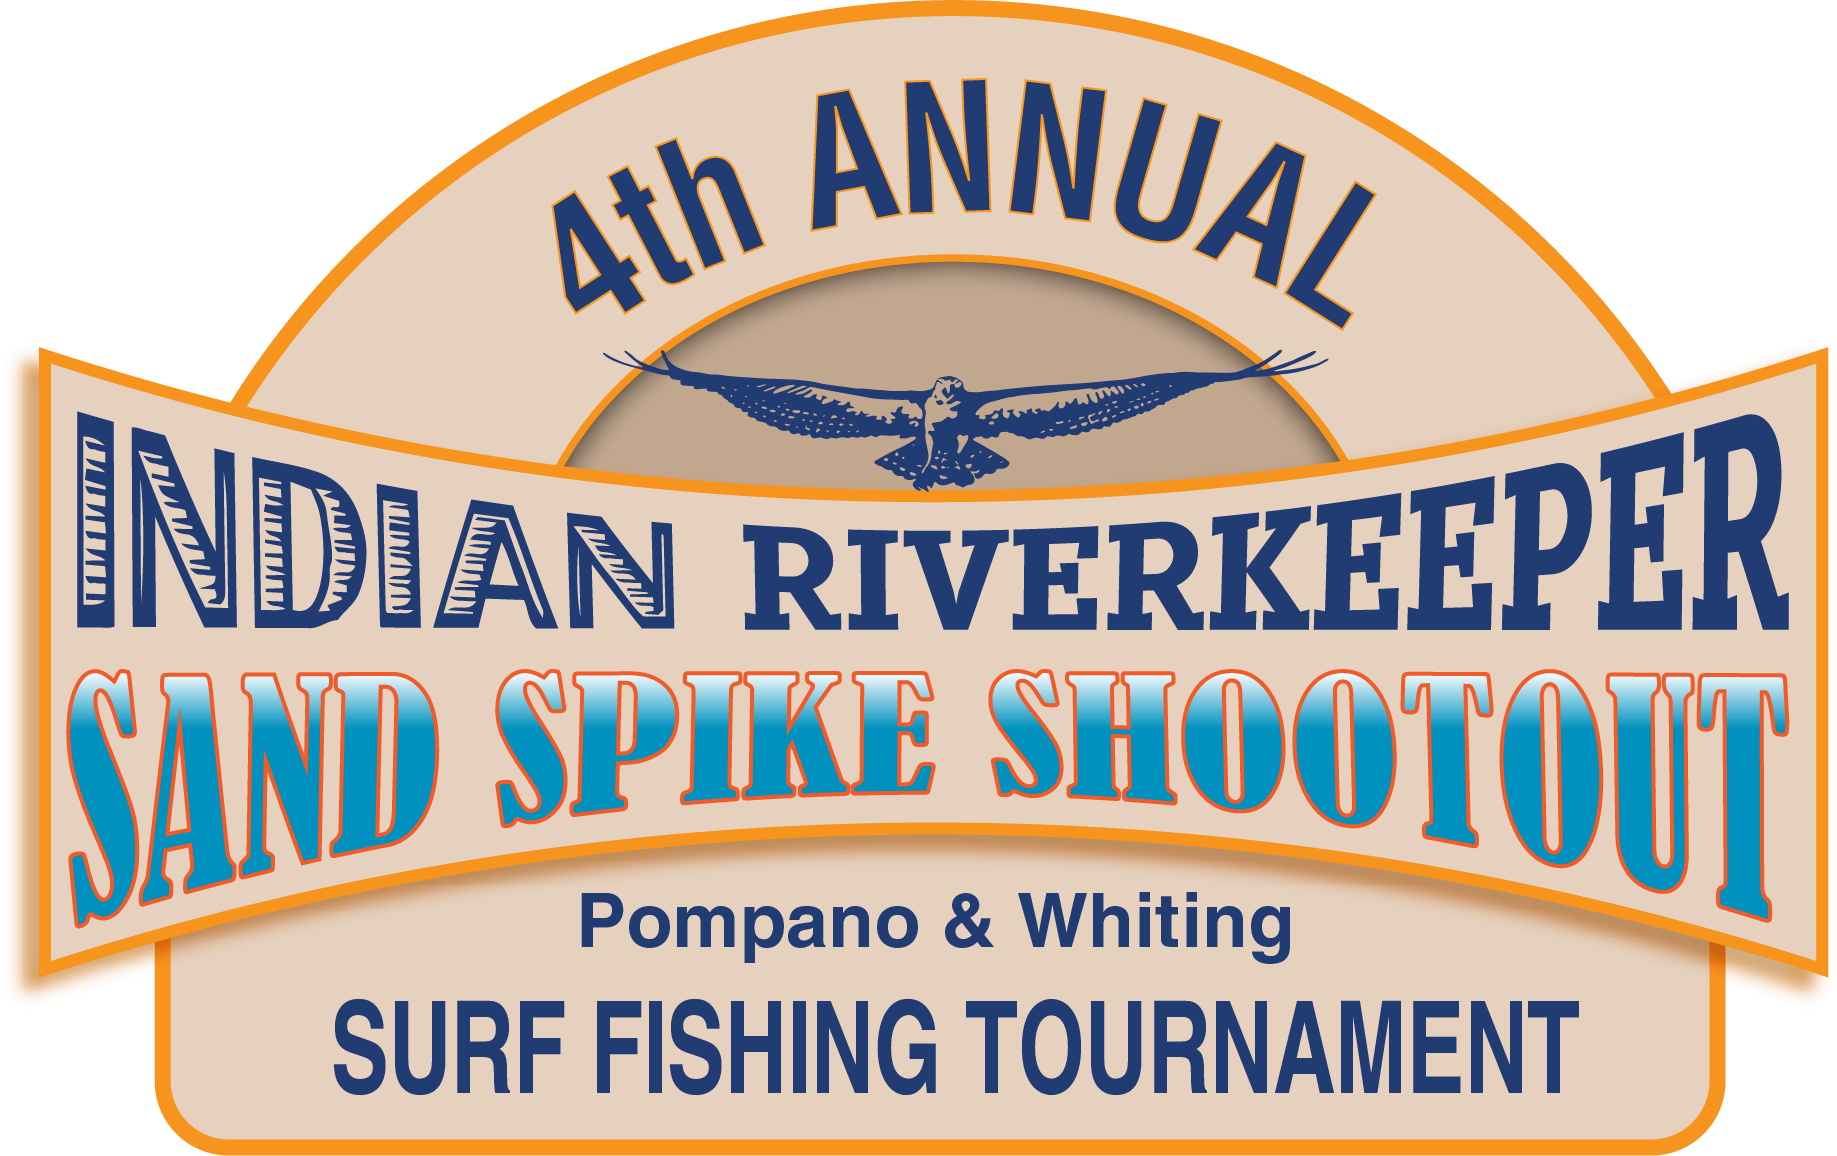 Sand Spike Shootout – The Indian Riverkeeper